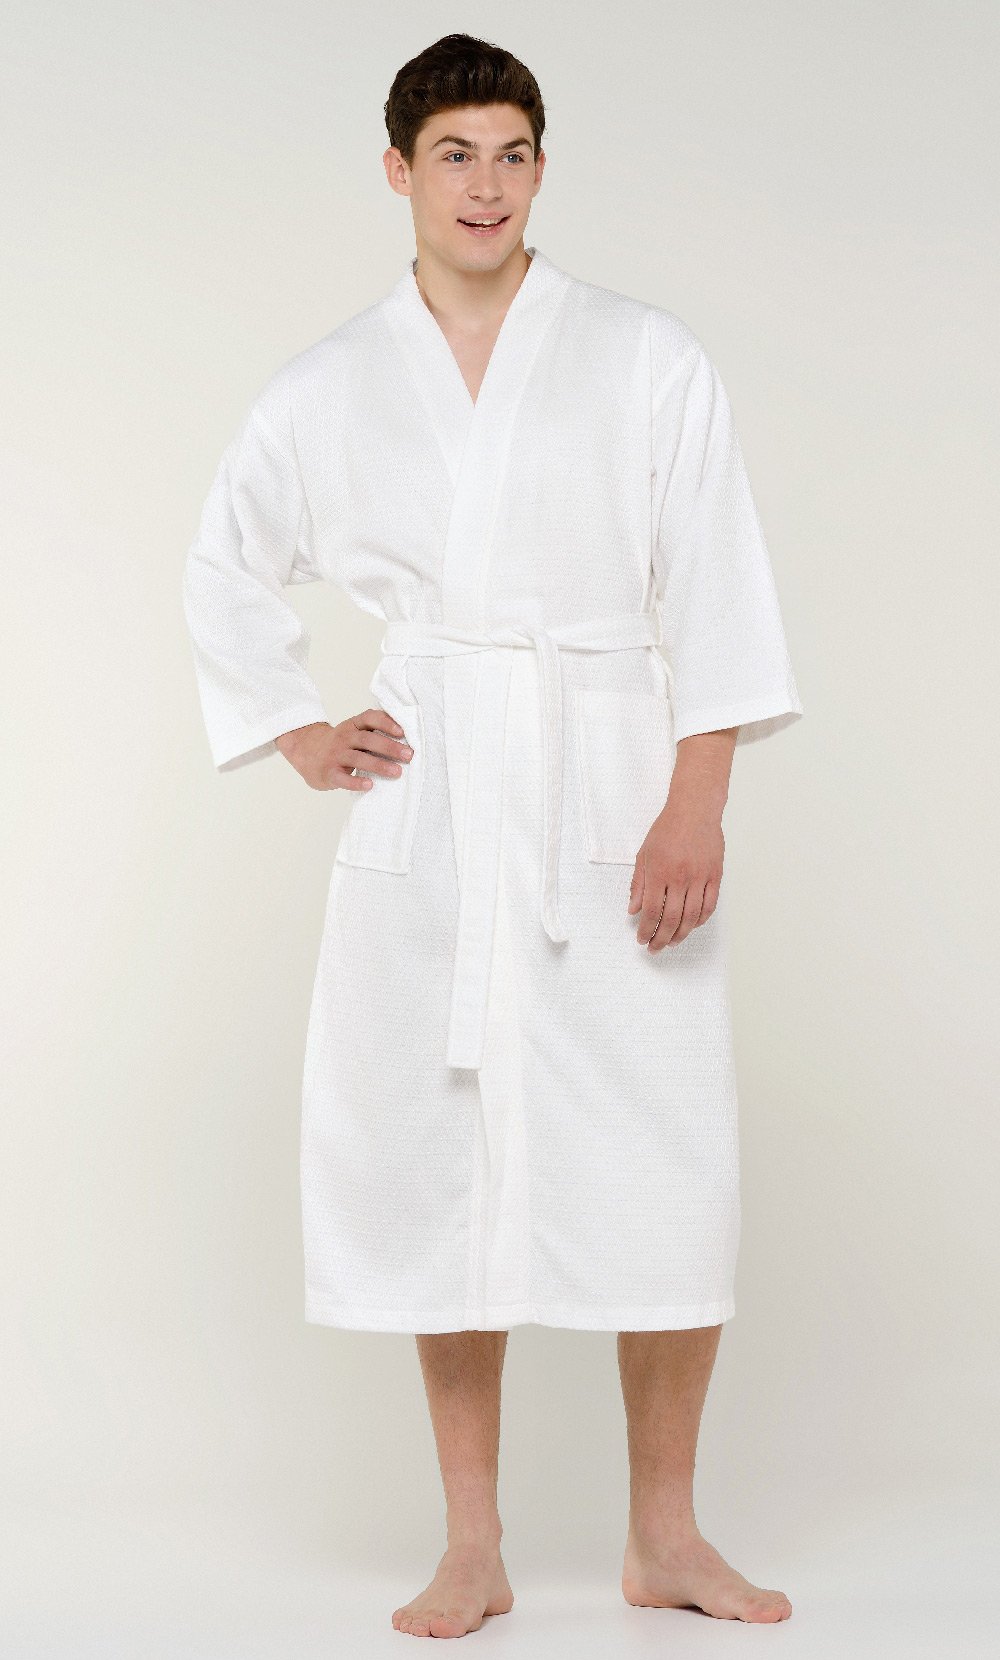 Mens Waffle Kimono Robes Spa Bathrobe Made in Turkey